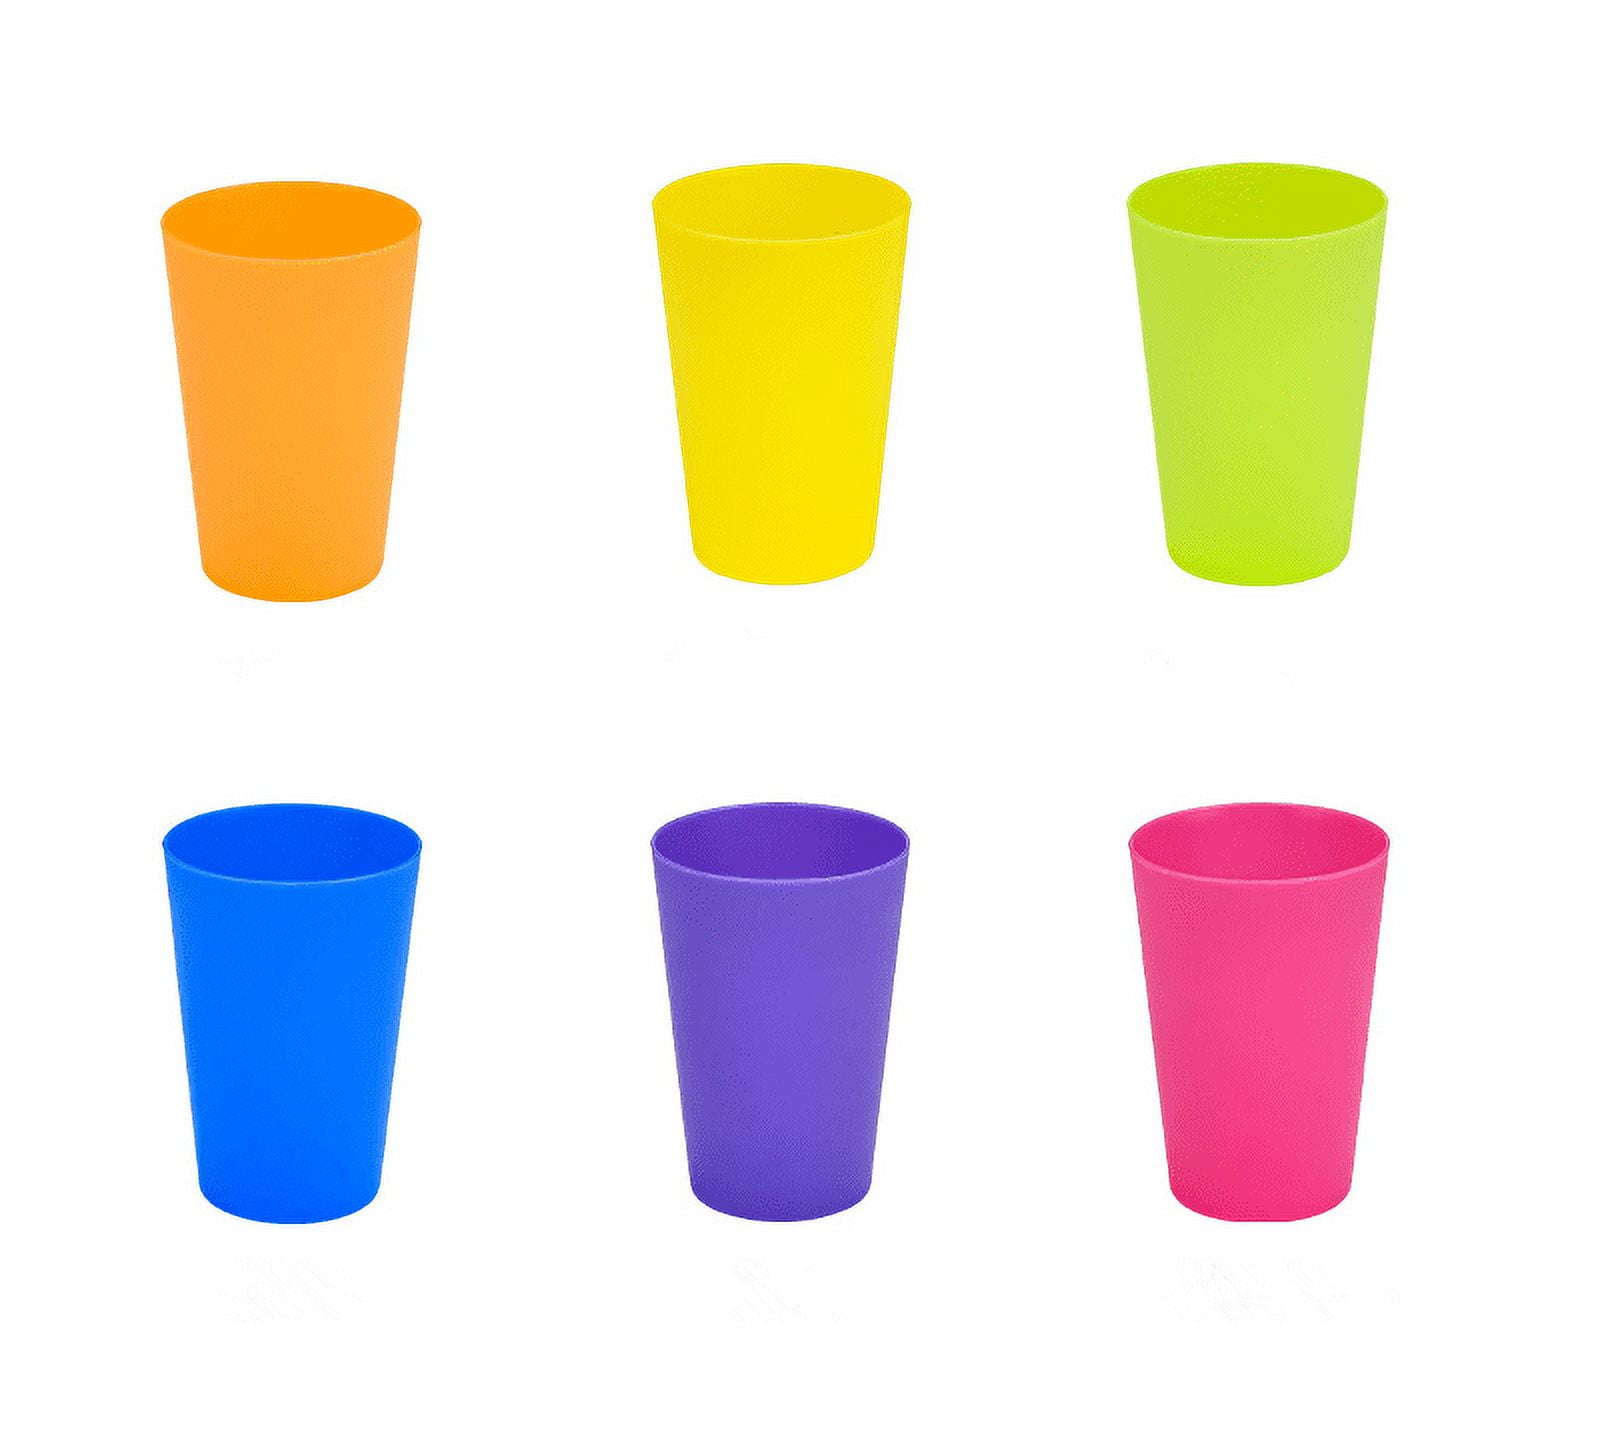 Chainplus Unbreakable Reusable Plastic Kids Cups, Assorted Colors, 5.6 oz Plastic Cups, Set of 12, Purple